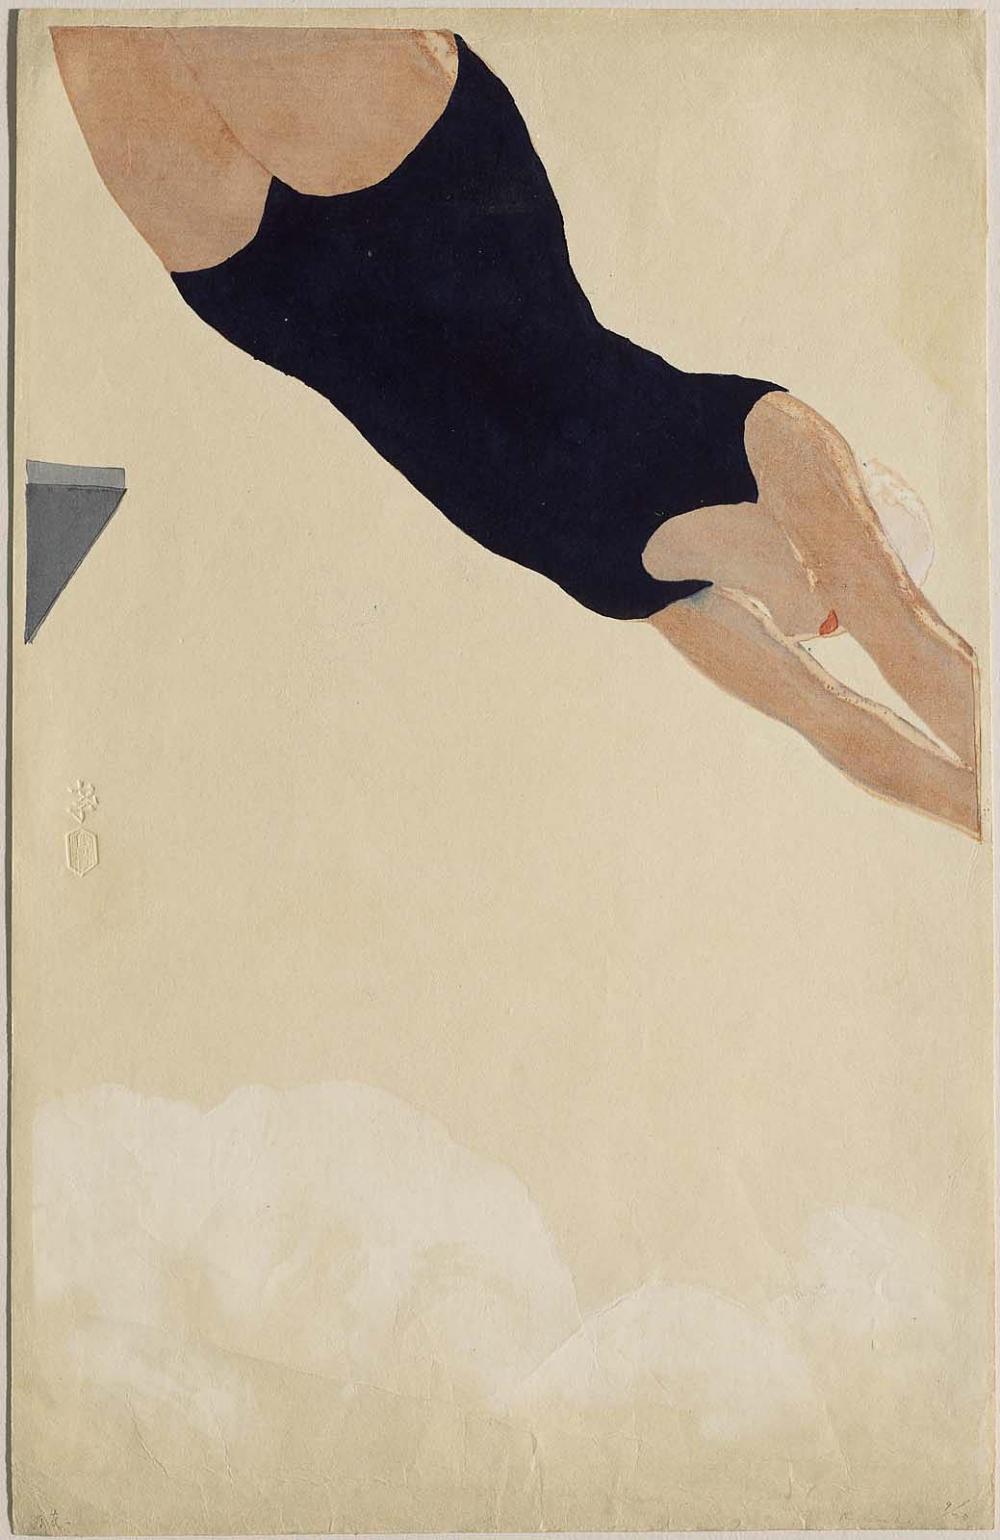 Dalış (orig. "Diving") by Kōshirō Onchi - 1932 - 47.8 x 30.8 cm 